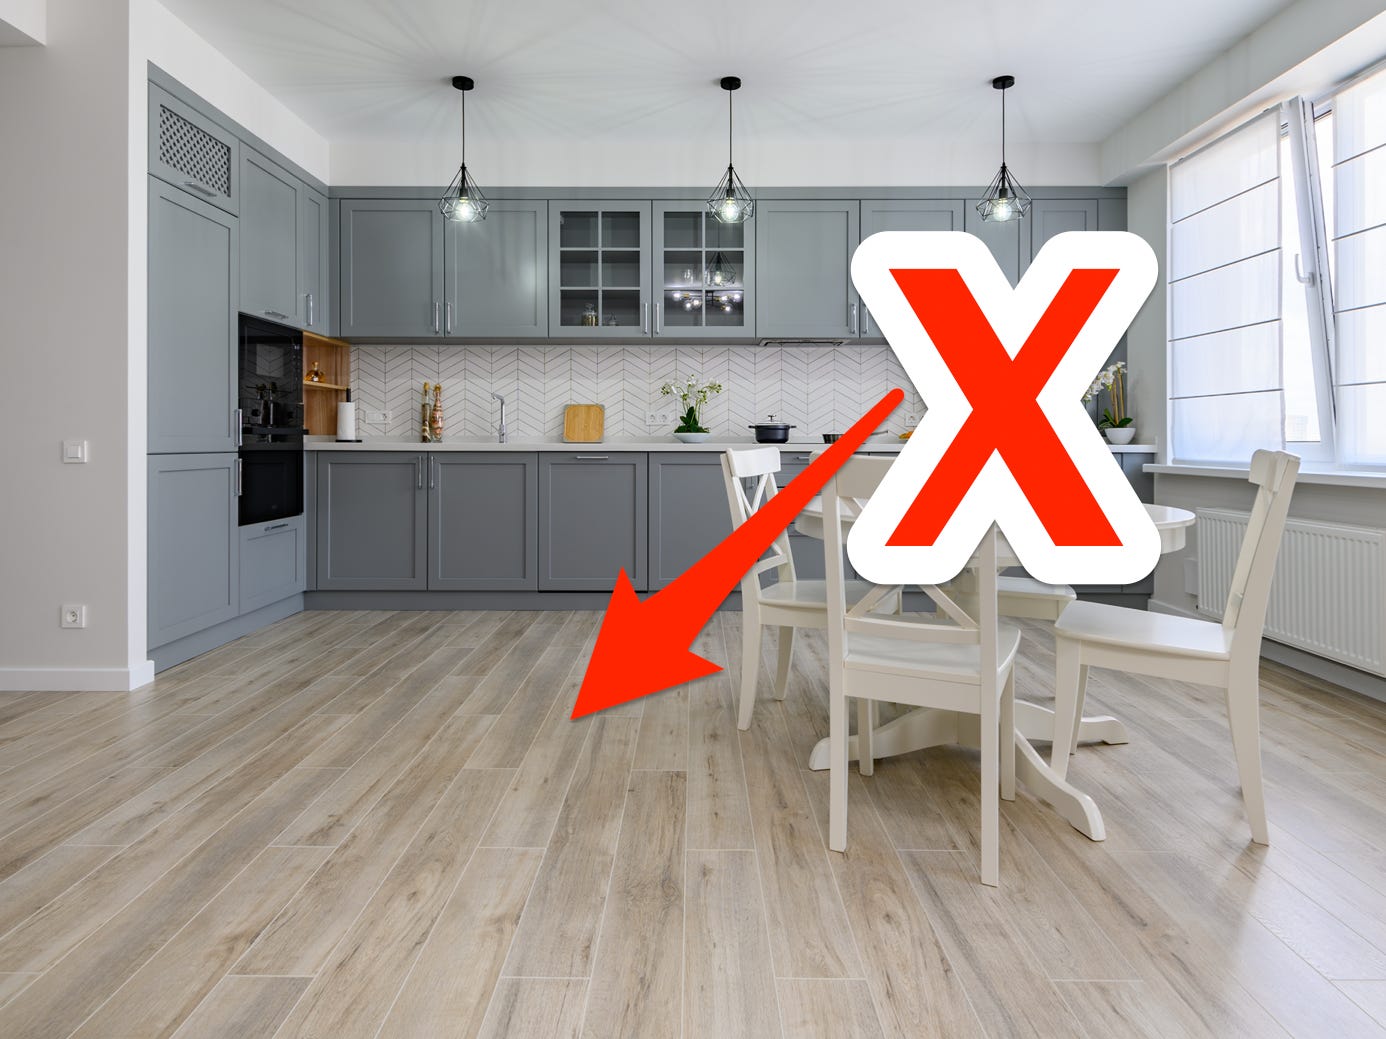 Rotes X und Pfeil zeigen auf Laminatboden in einer modernen Küche mit minimalistischen Möbeln